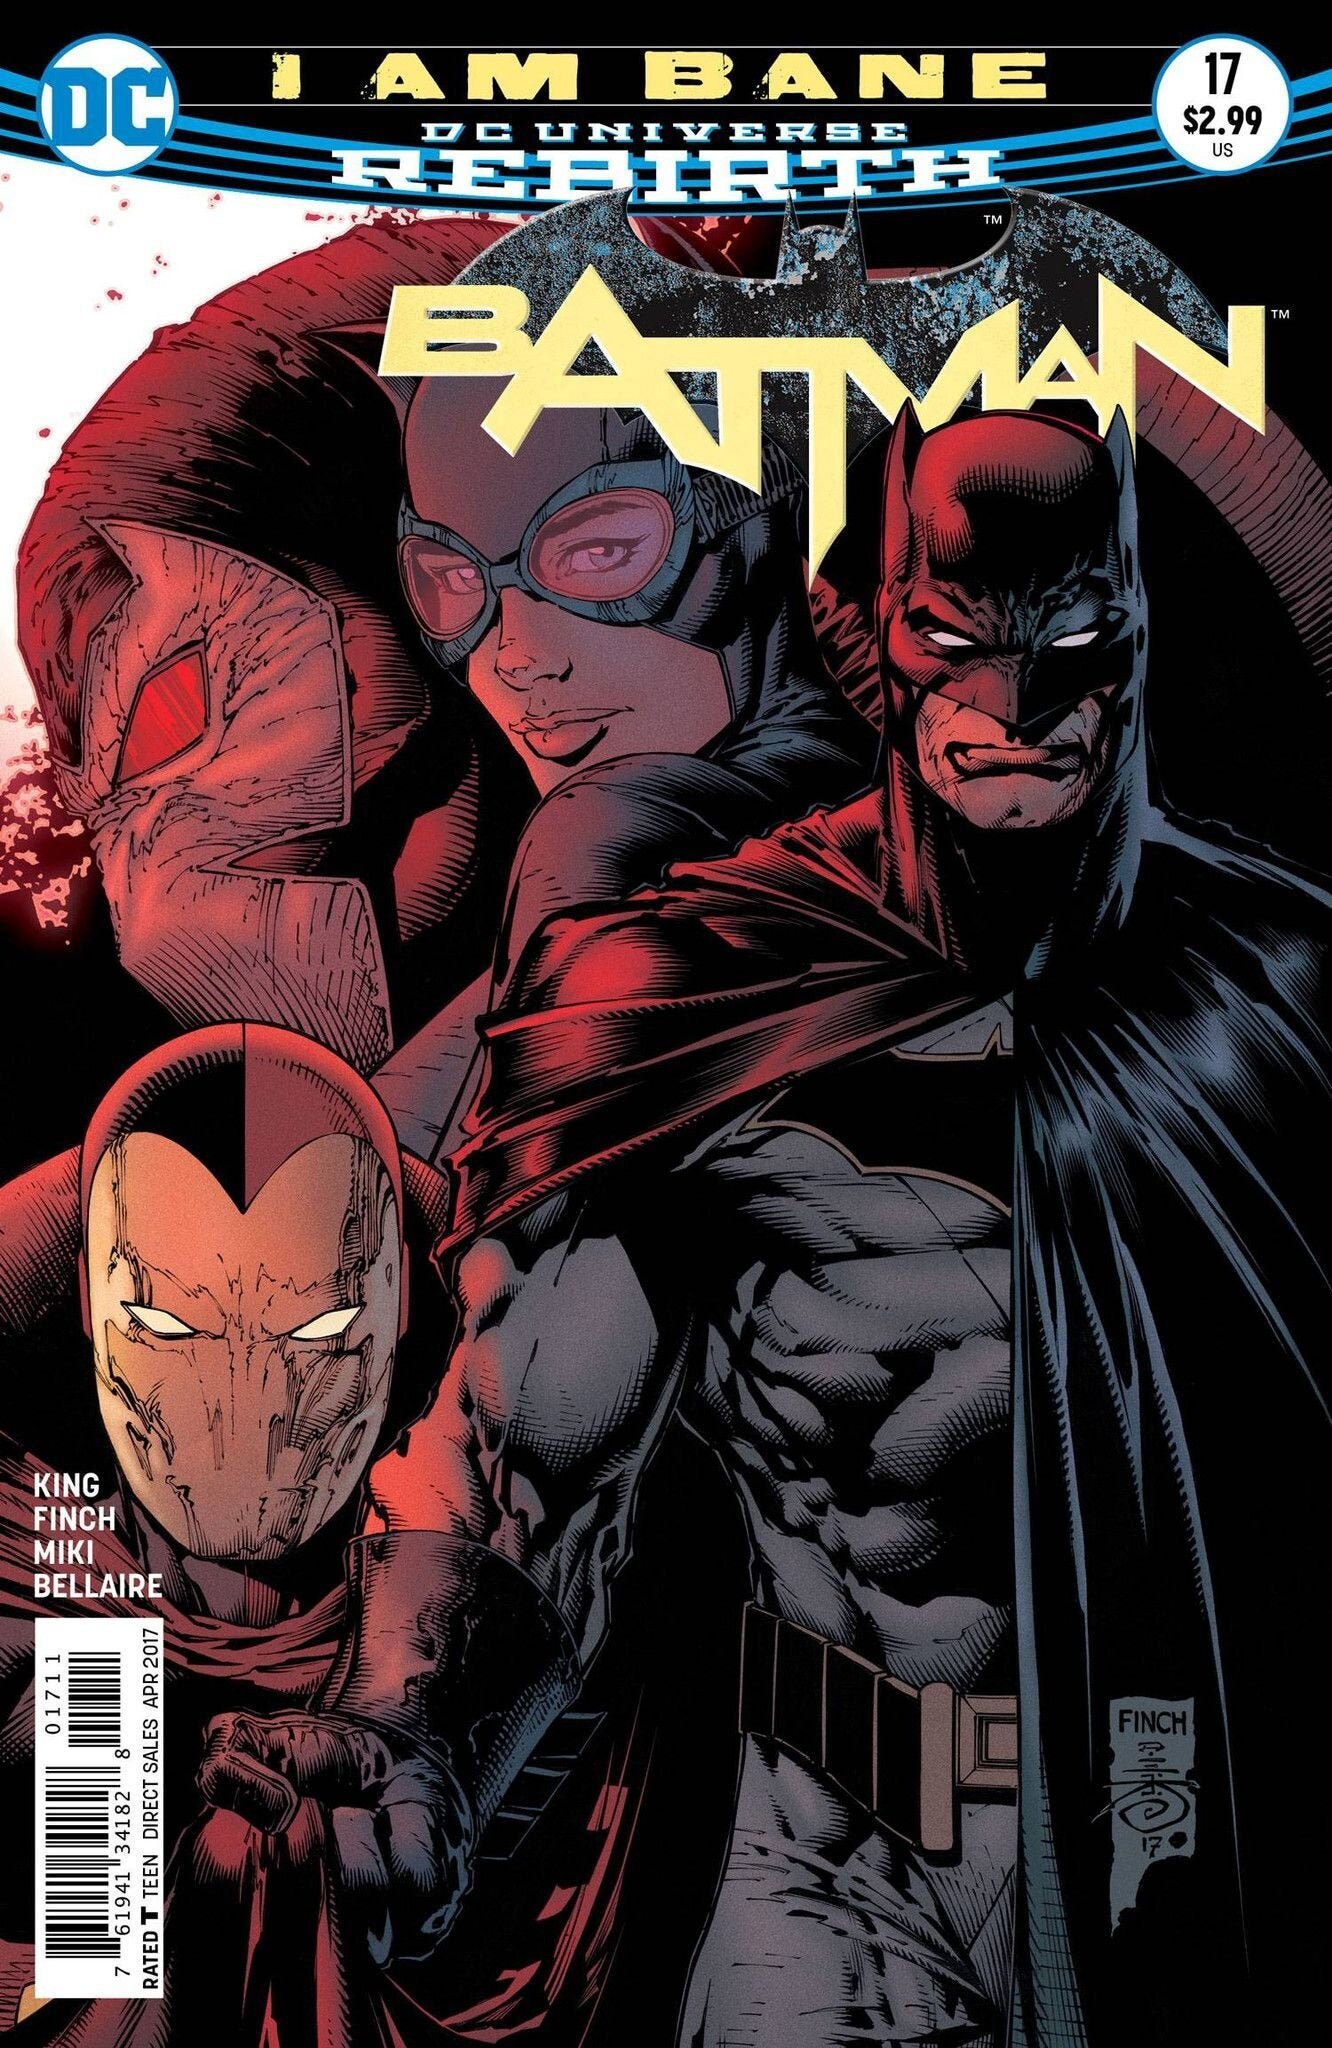 Batman #17 (I Am Bane) April 2017 DC Comics Grade NM